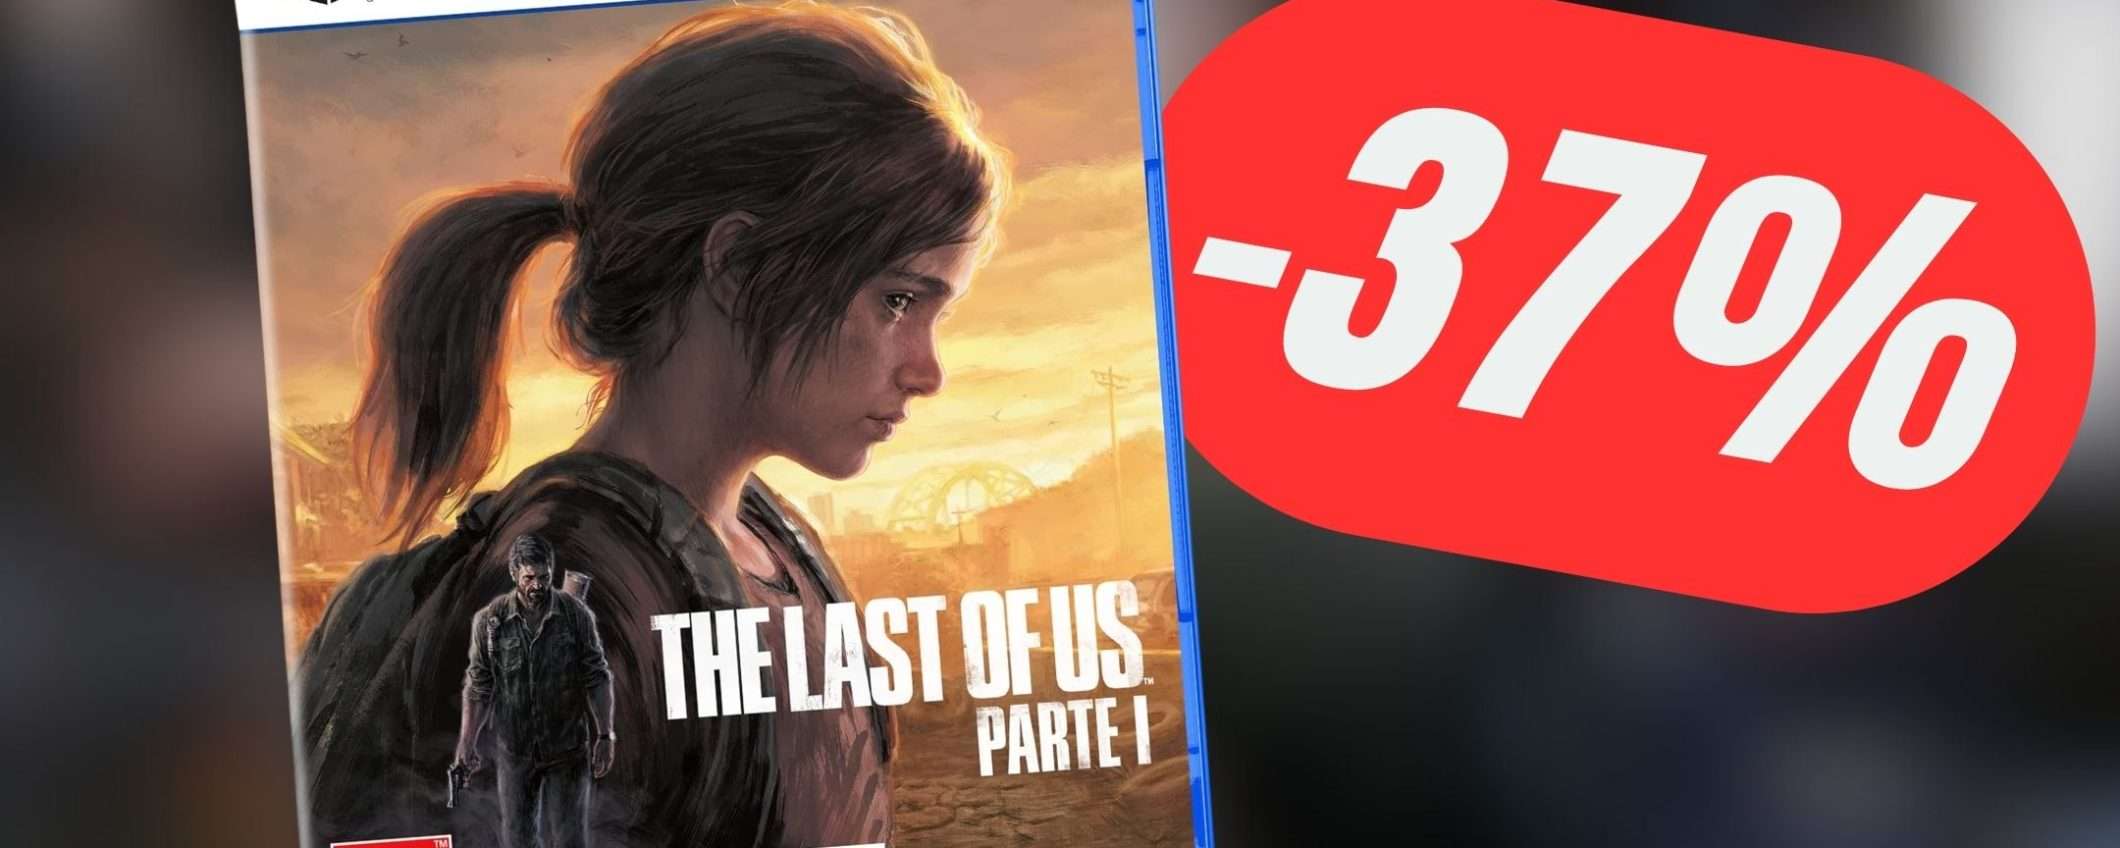 The Last of Us REMAKE scontato del 37% non puoi non prenderlo!